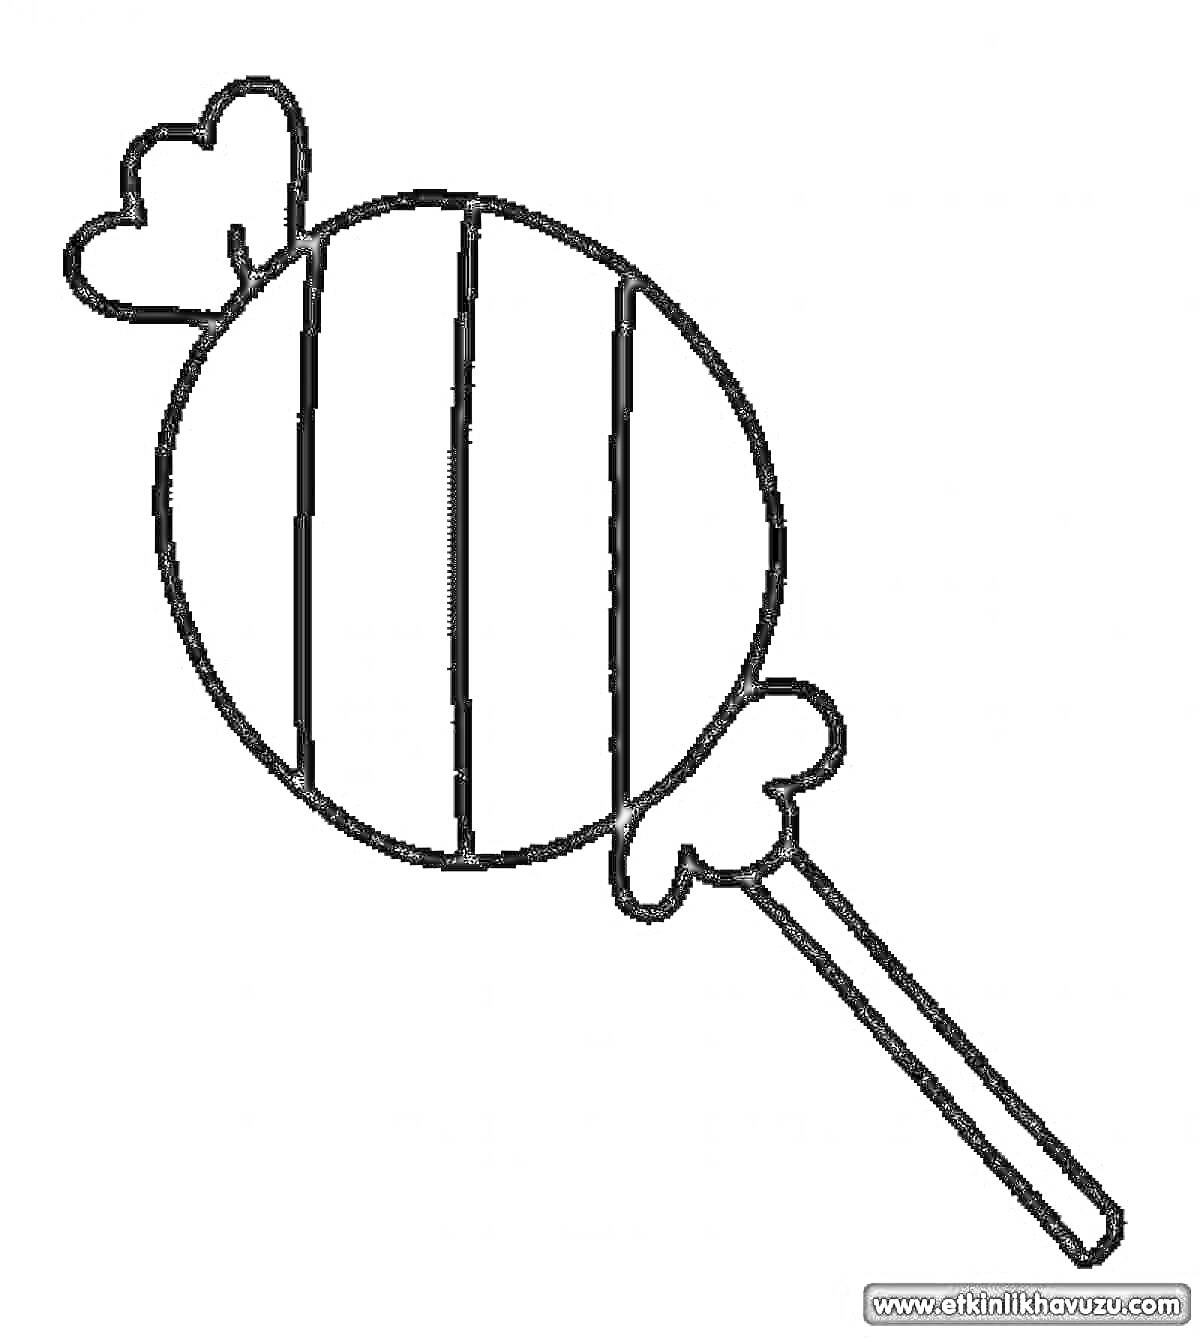 Раскраска Чупа-чупс с закрученными полосками и обертками на палочке